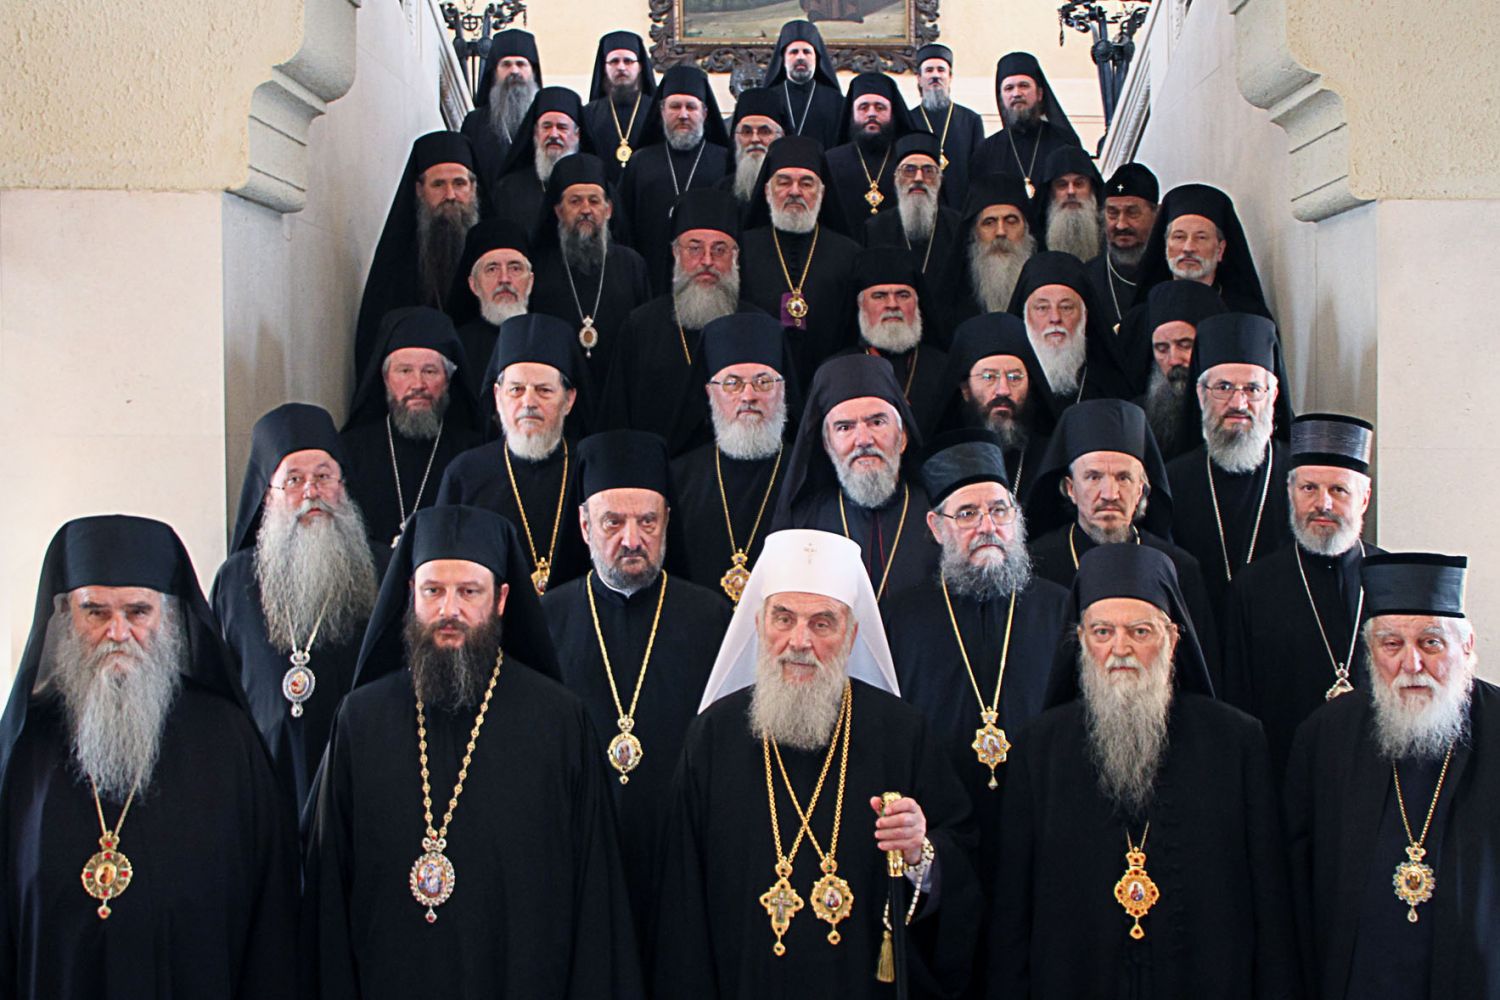 Décision de l’Assemblée des évêques de l’Église orthodoxe serbe concernant le dialogue avec l’Église orthodoxe de Macédoine